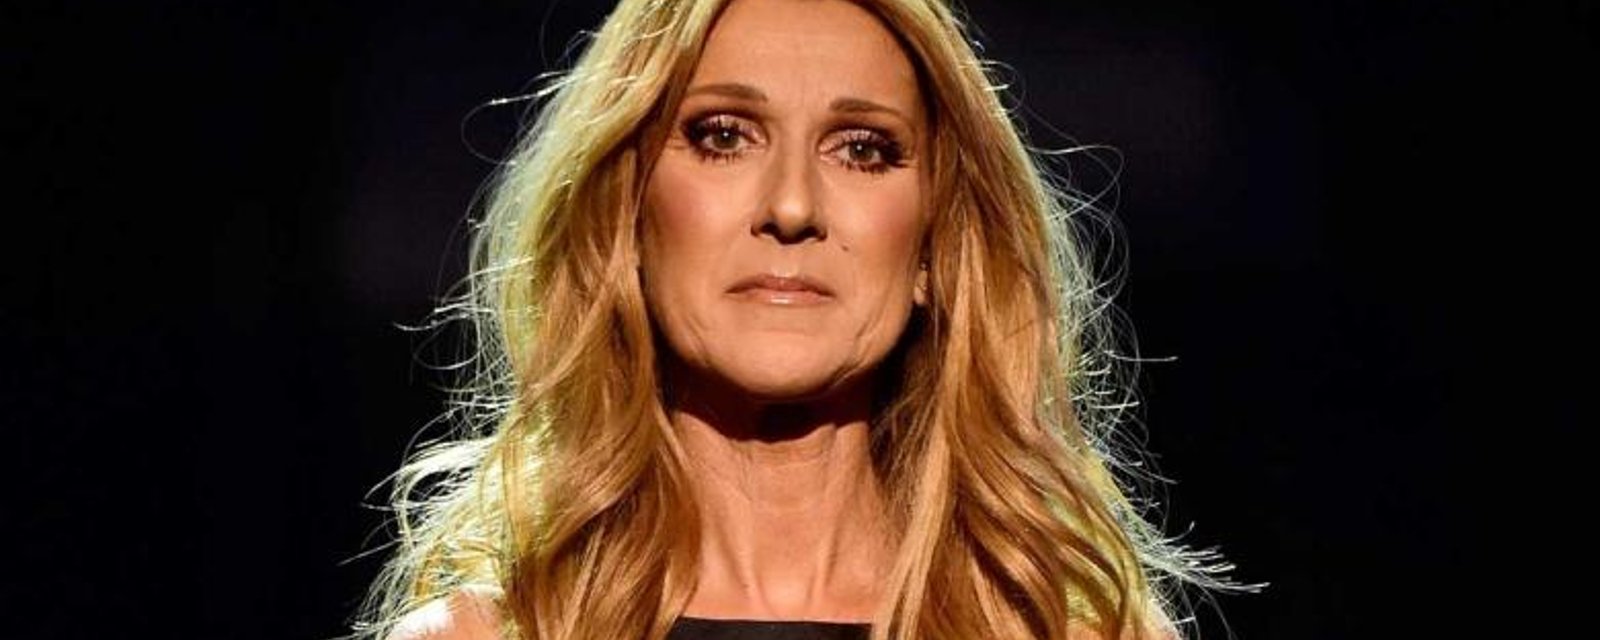 Un magazine américain propage de fausses rumeurs sur Céline Dion!